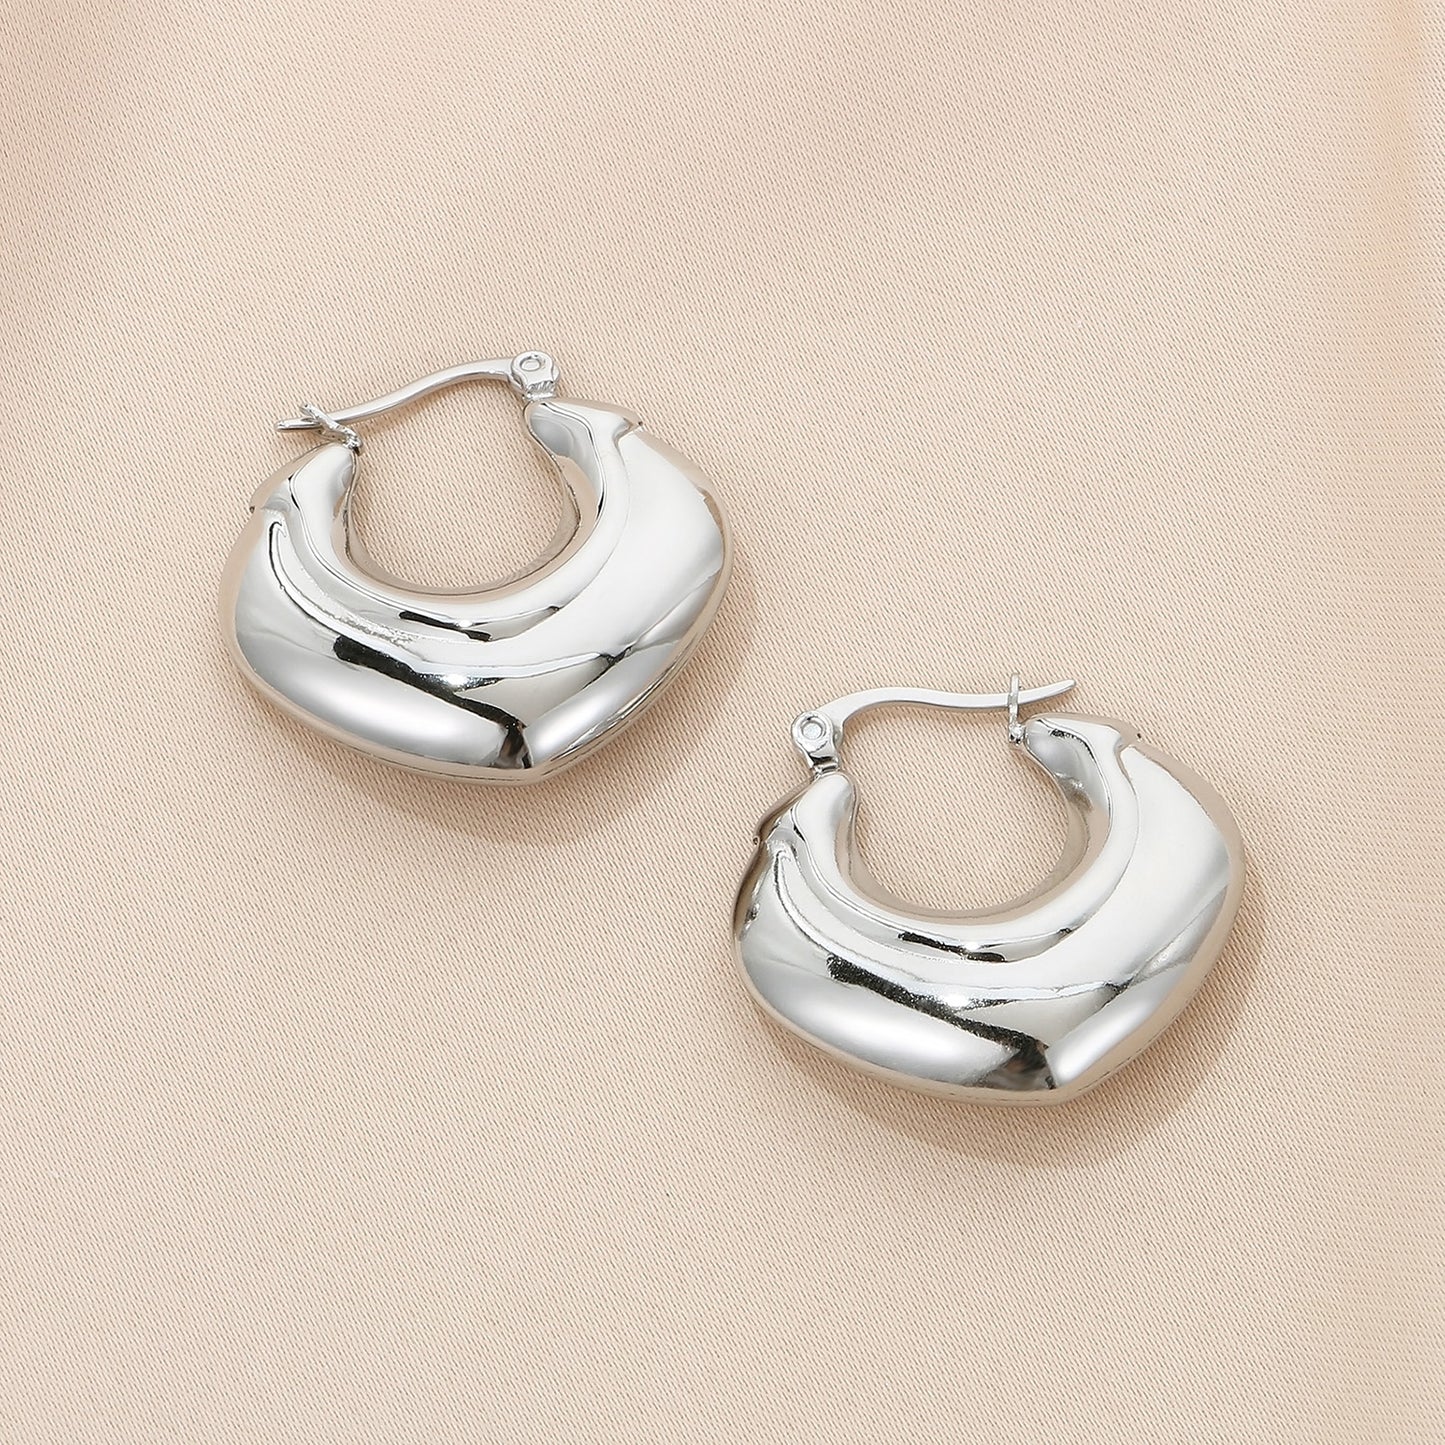 Stainless Steel Hinged Hoop Earrings apparel & accessories